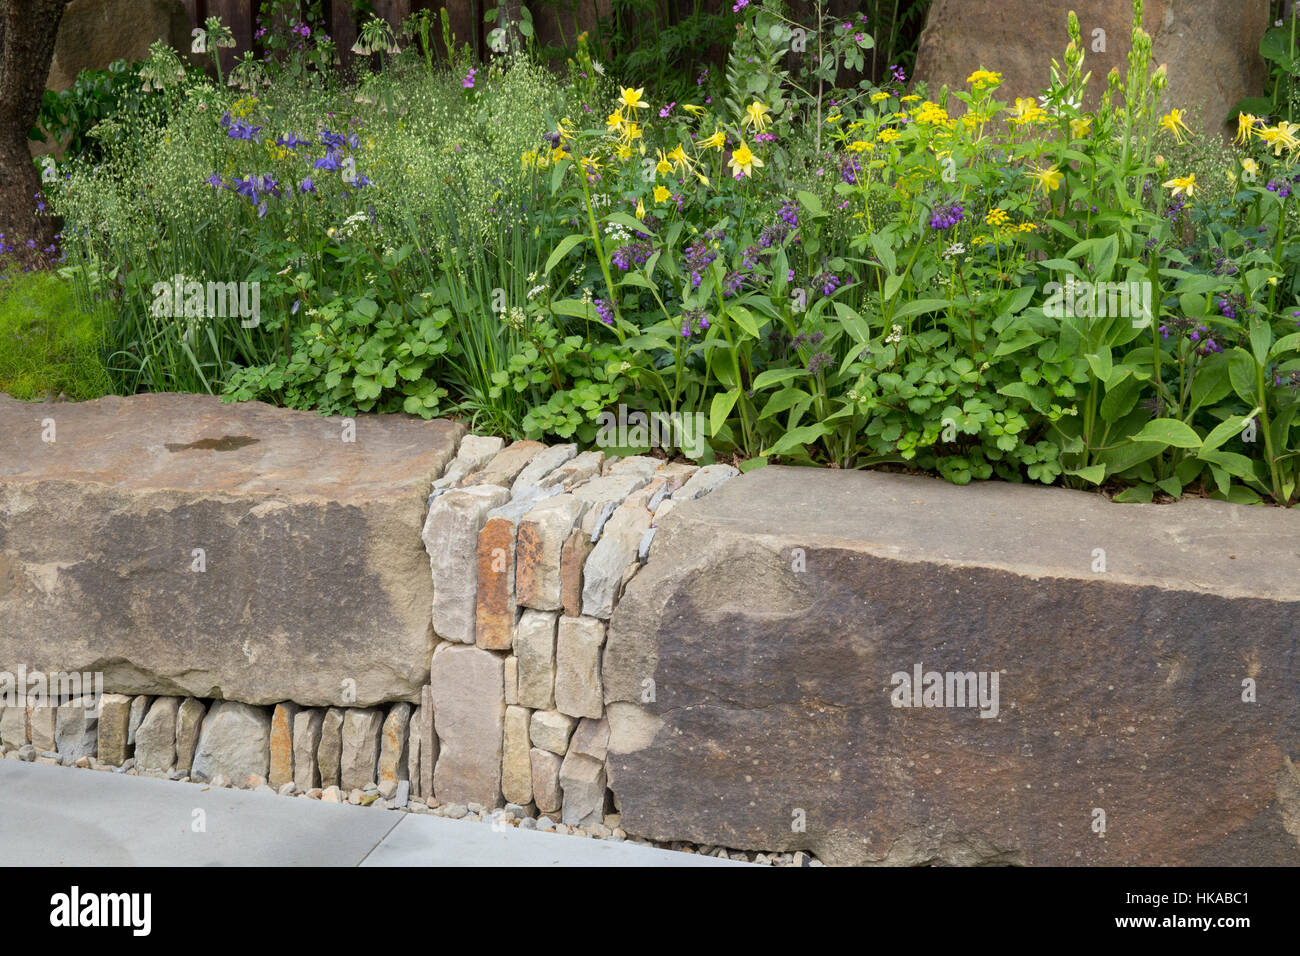 Le jardin M&G, vue sur la forêt de Dean banc de rochers en grès, Aquilegia chrysantha, Aquilegia alpina massifs de fleurs surélevées Banque D'Images